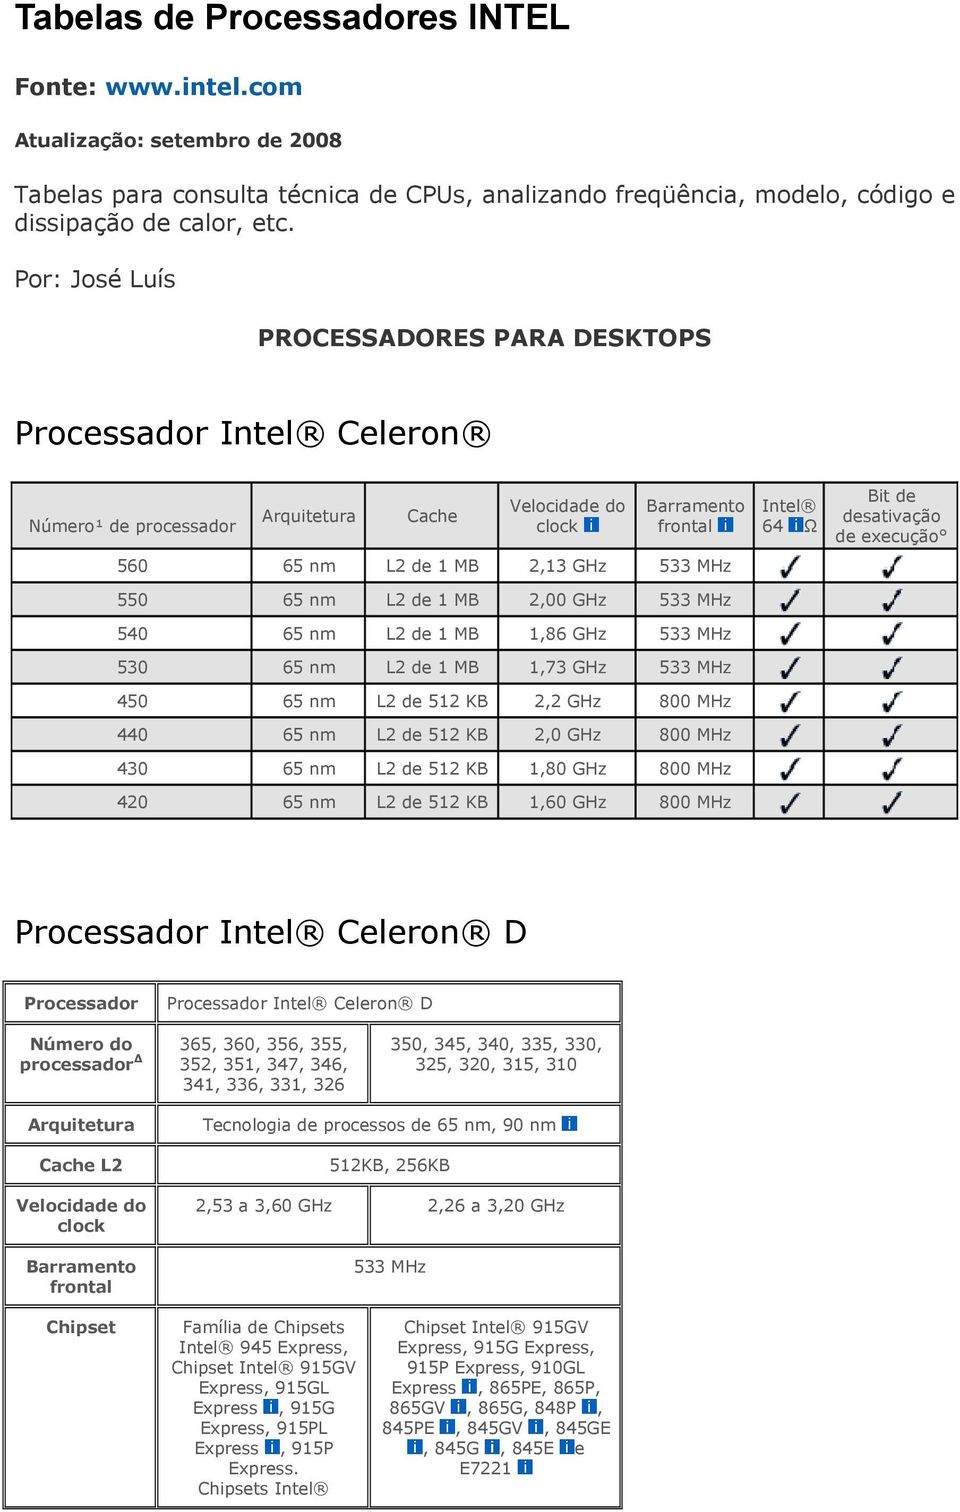 KB 2,0 430 de 512 KB 1,80 420 de 512 KB 1,60 64 Ω Bit de desativação de execução Processador Celeron D Processador Processador Celeron D Número do 365, 360, 356, 355, processador 352, 351, 347, 346,